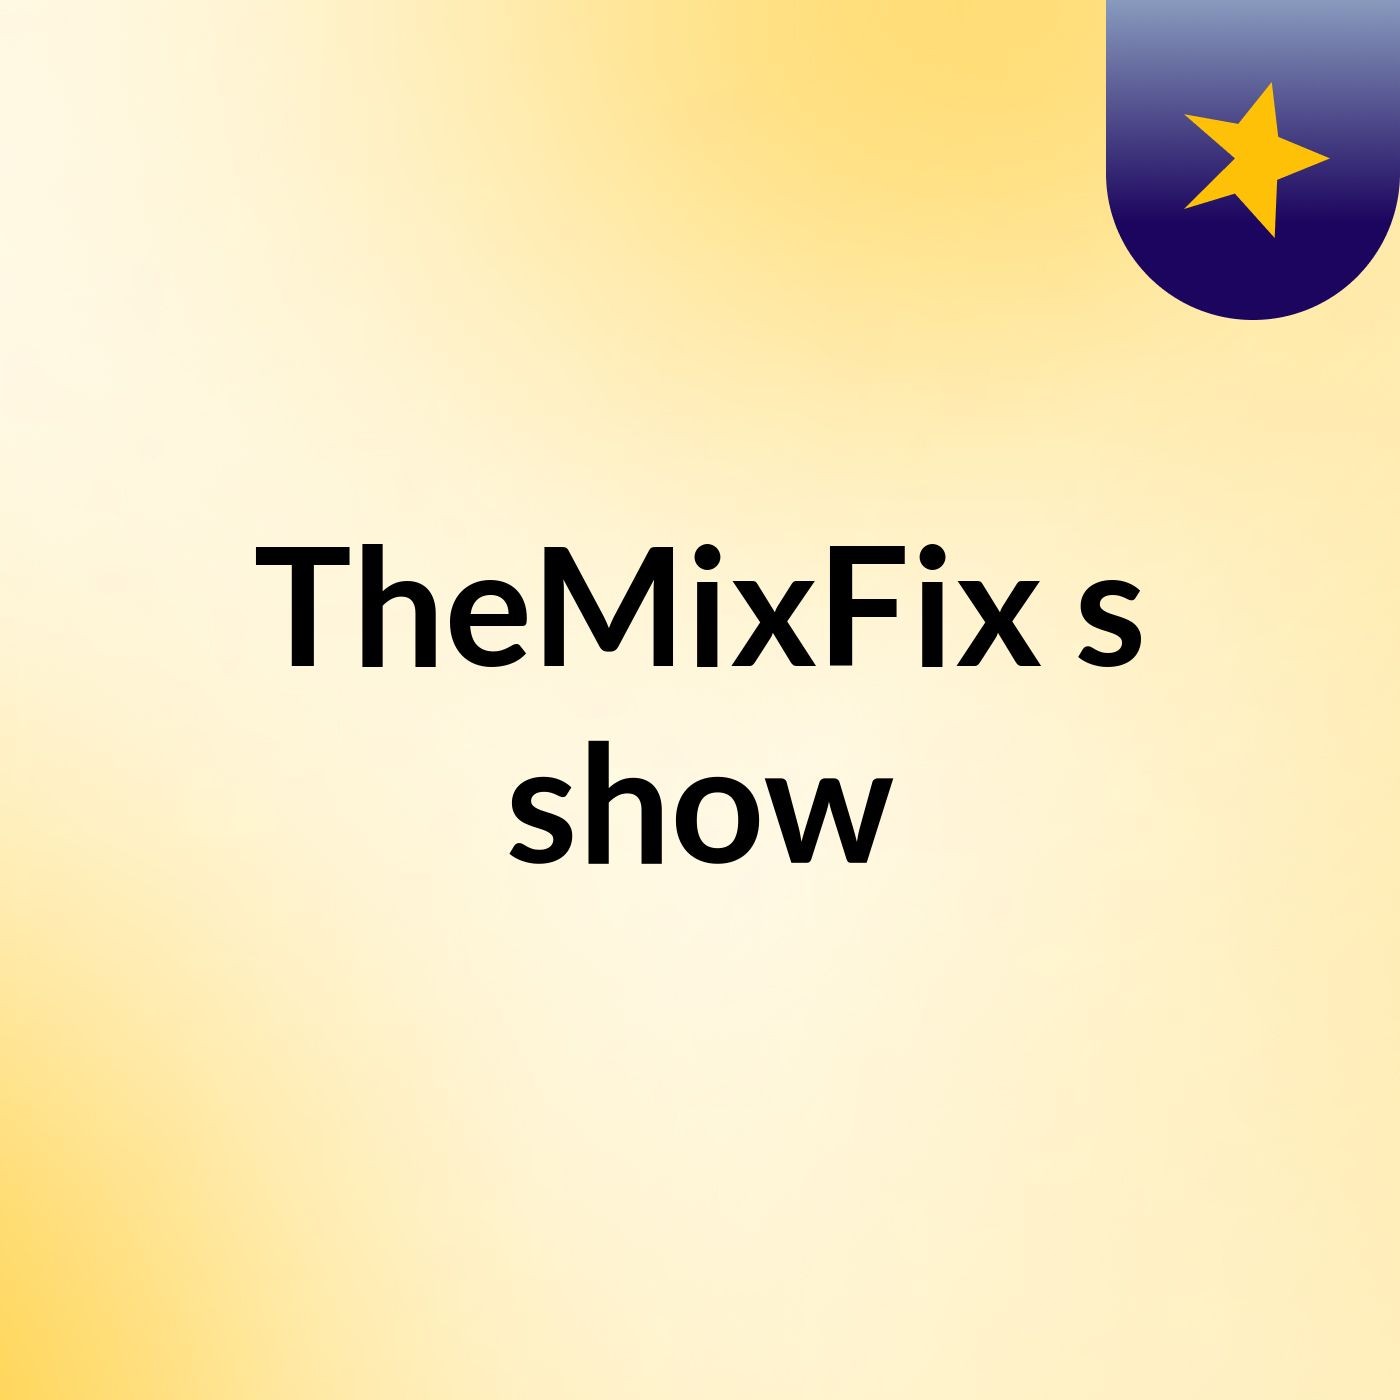 TheMixFix's show